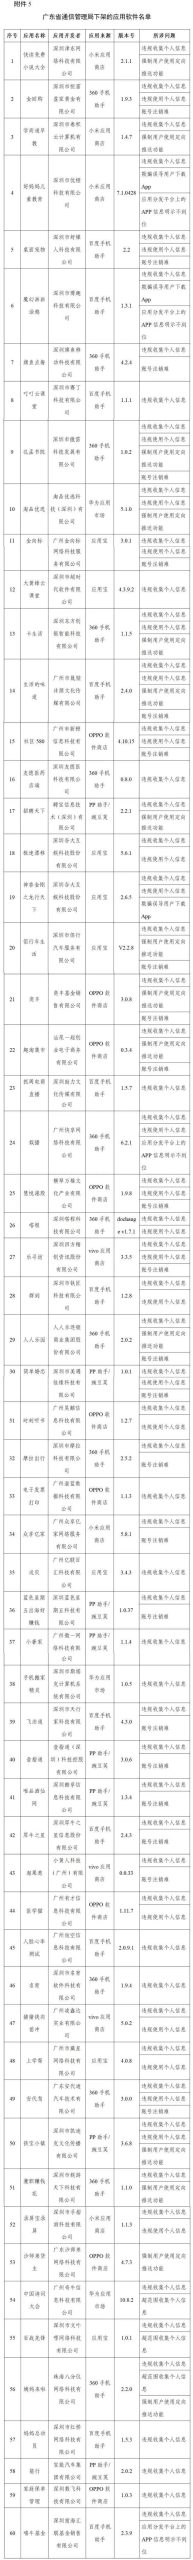 广东省通信管理局下架的应用软件名单